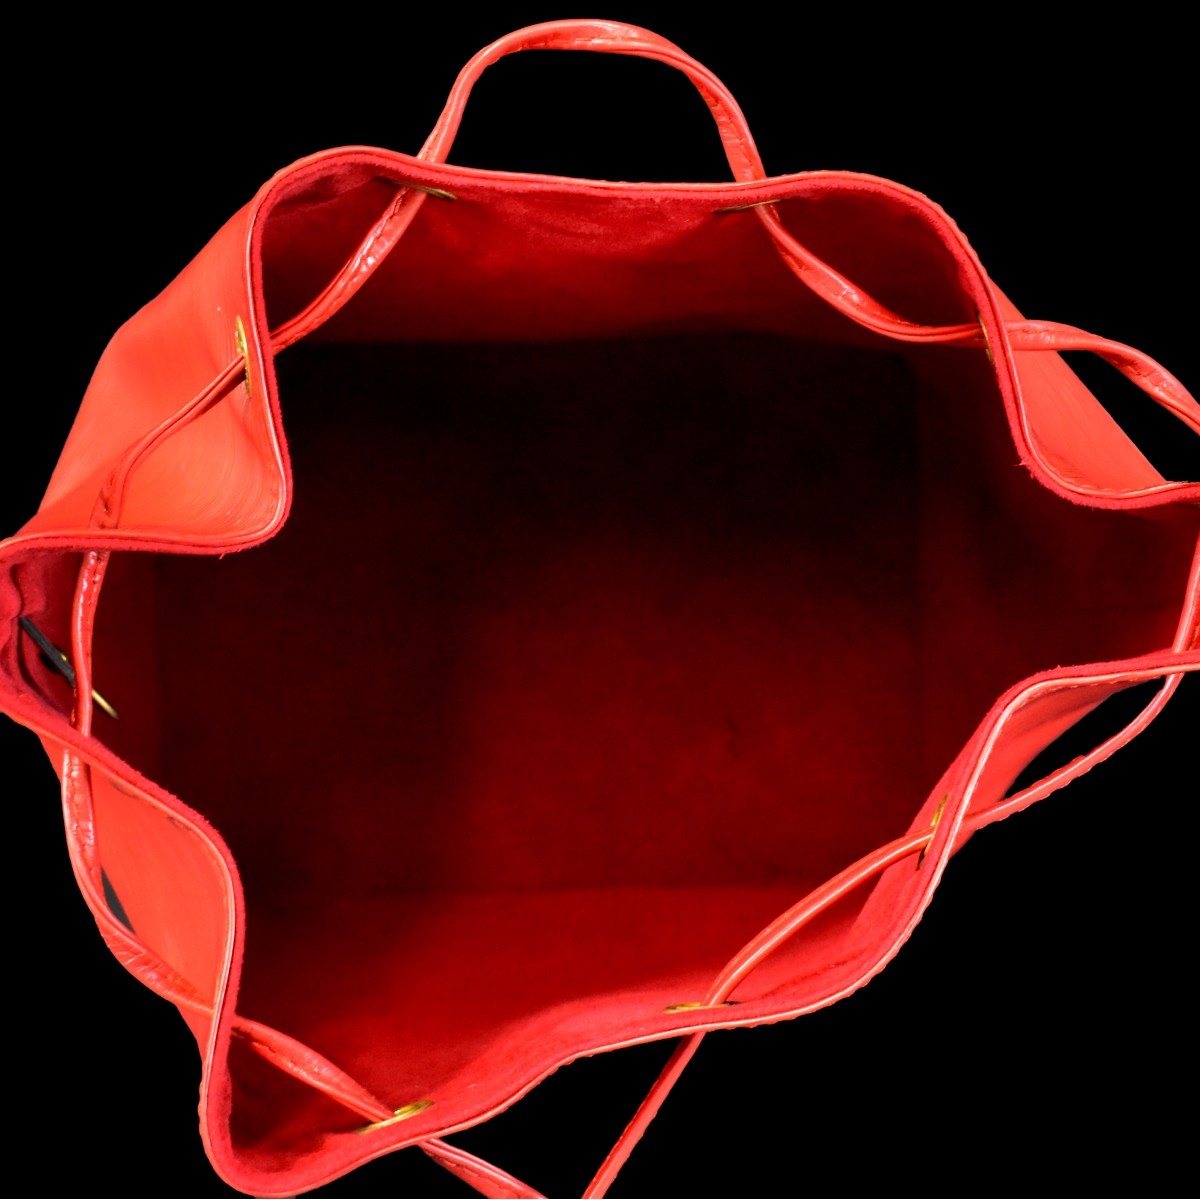 Louis Vuitton Red Leather Epi Noe Shoulder Bag